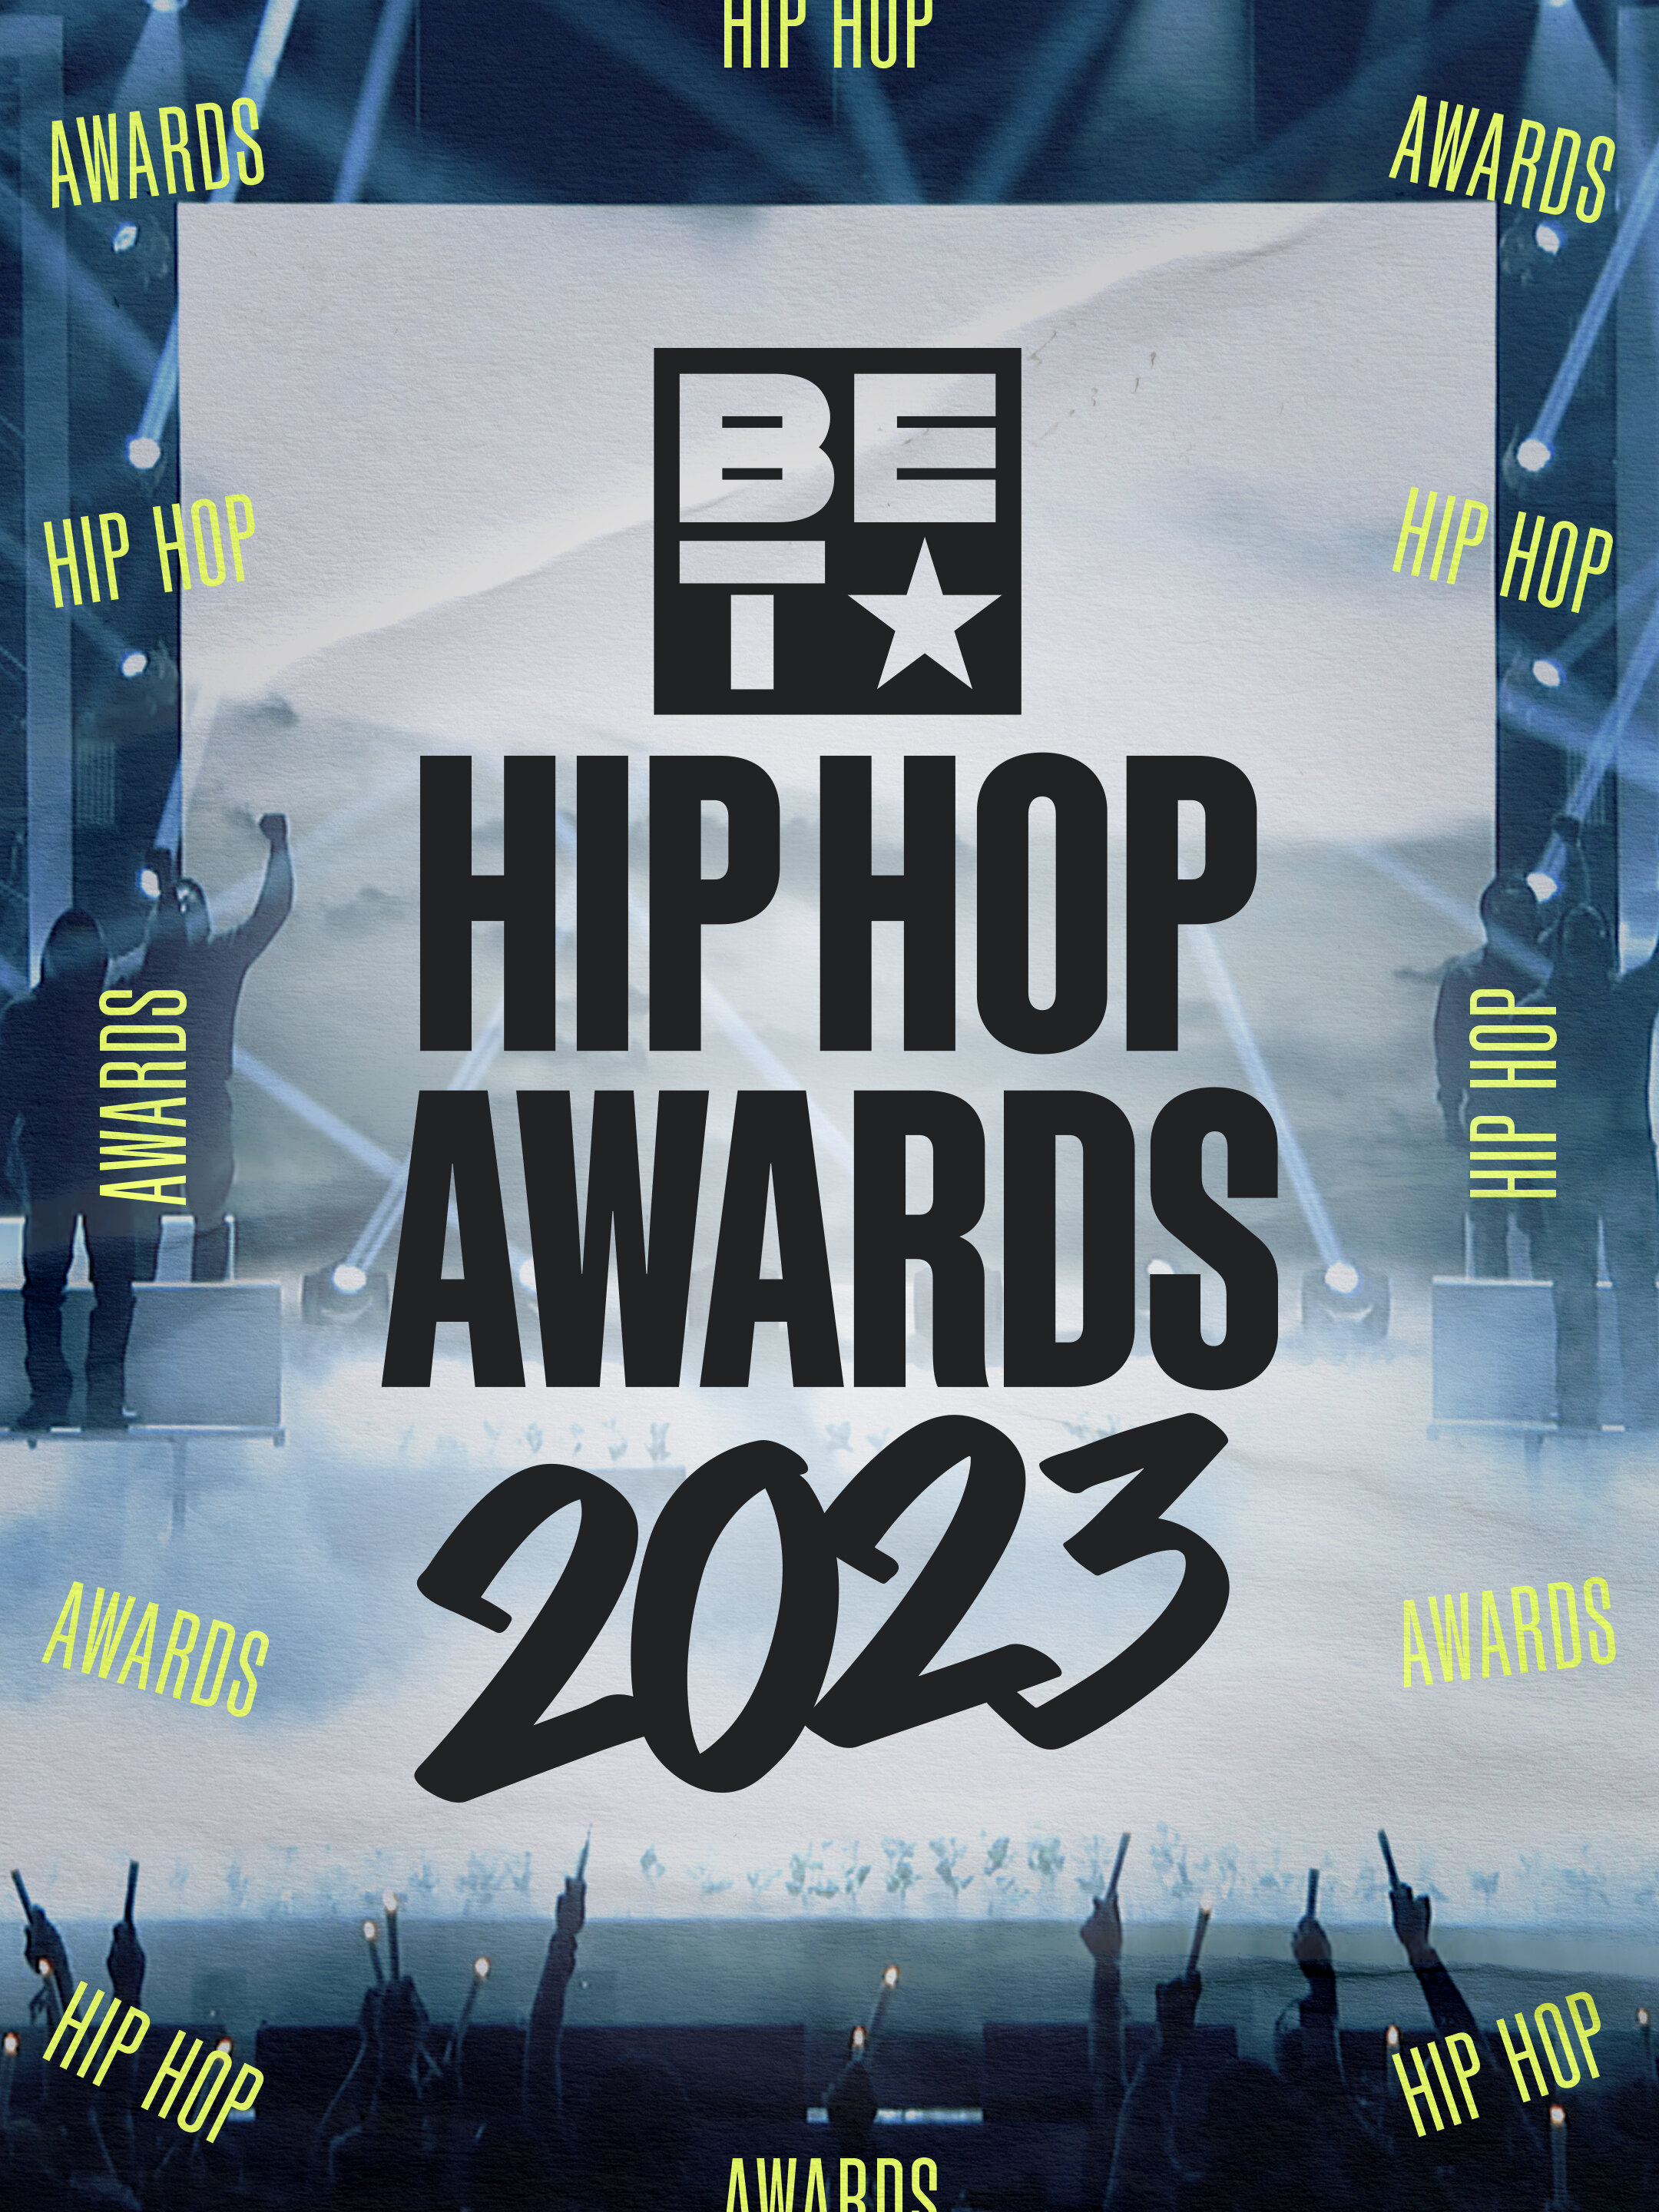 BET Hip Hop Awards ne zaman